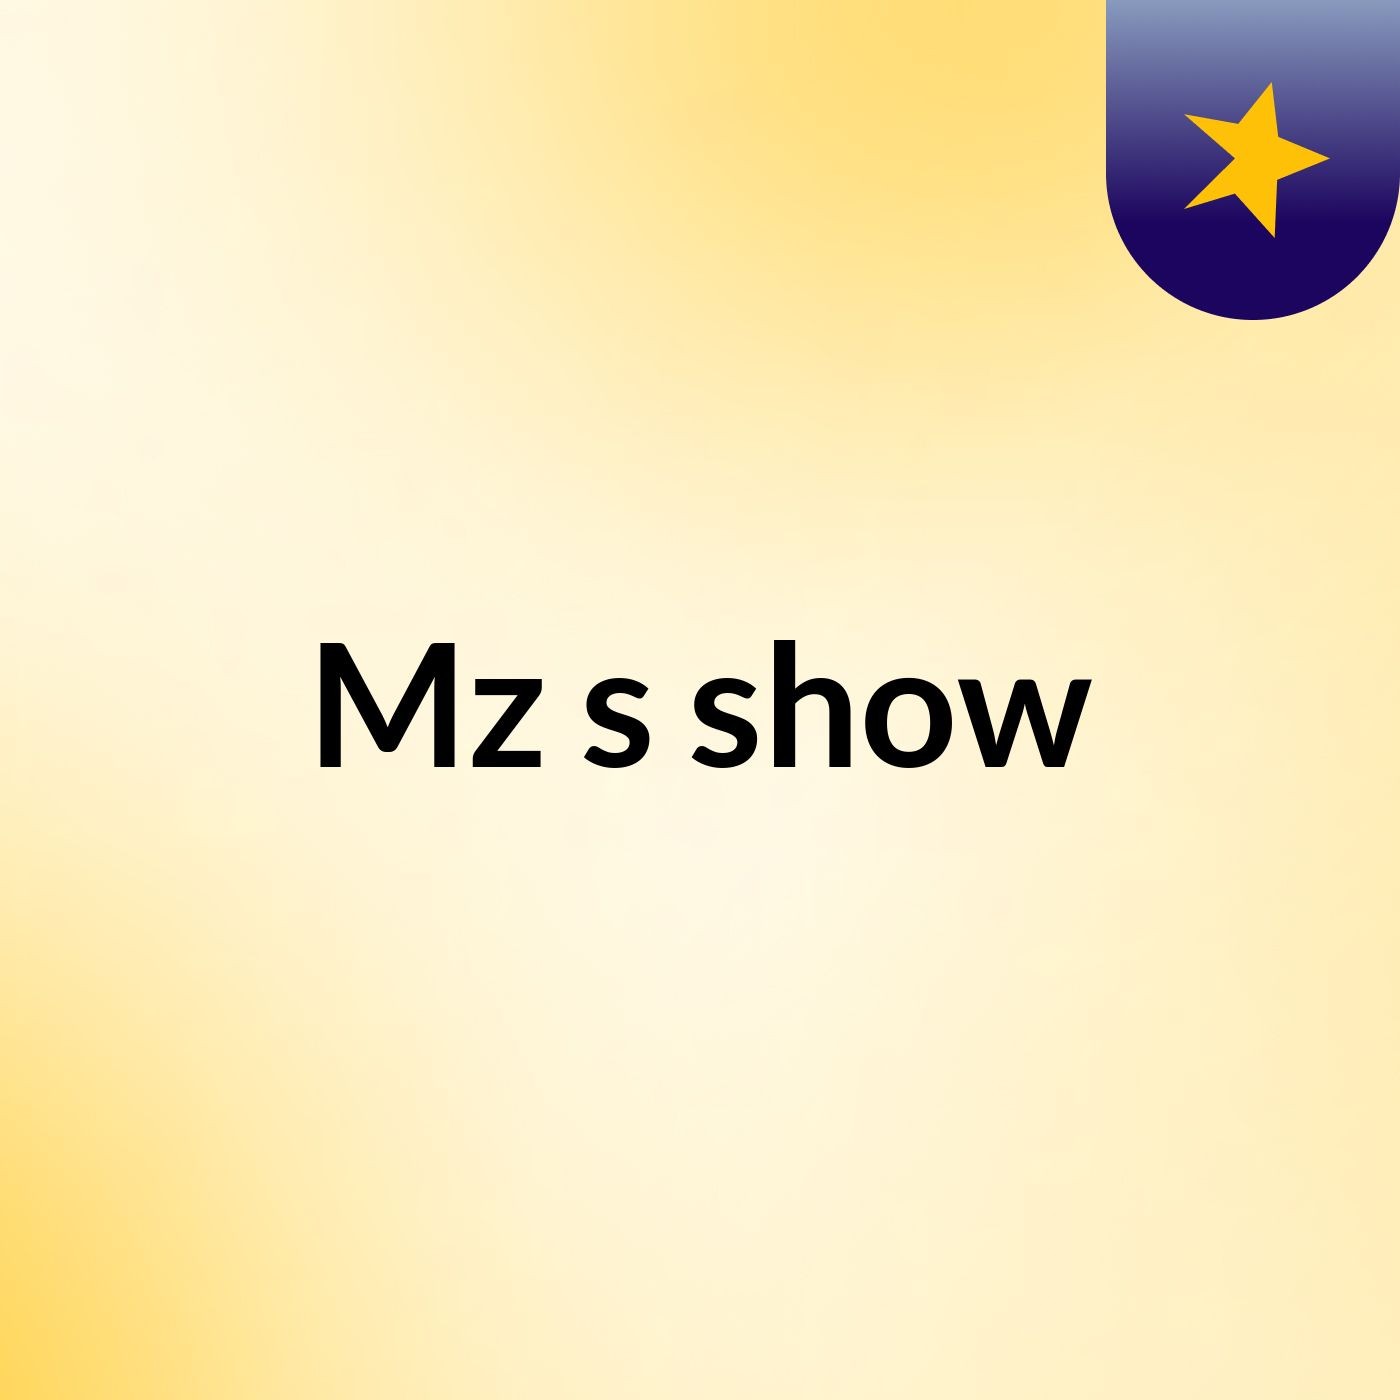 Mz's show